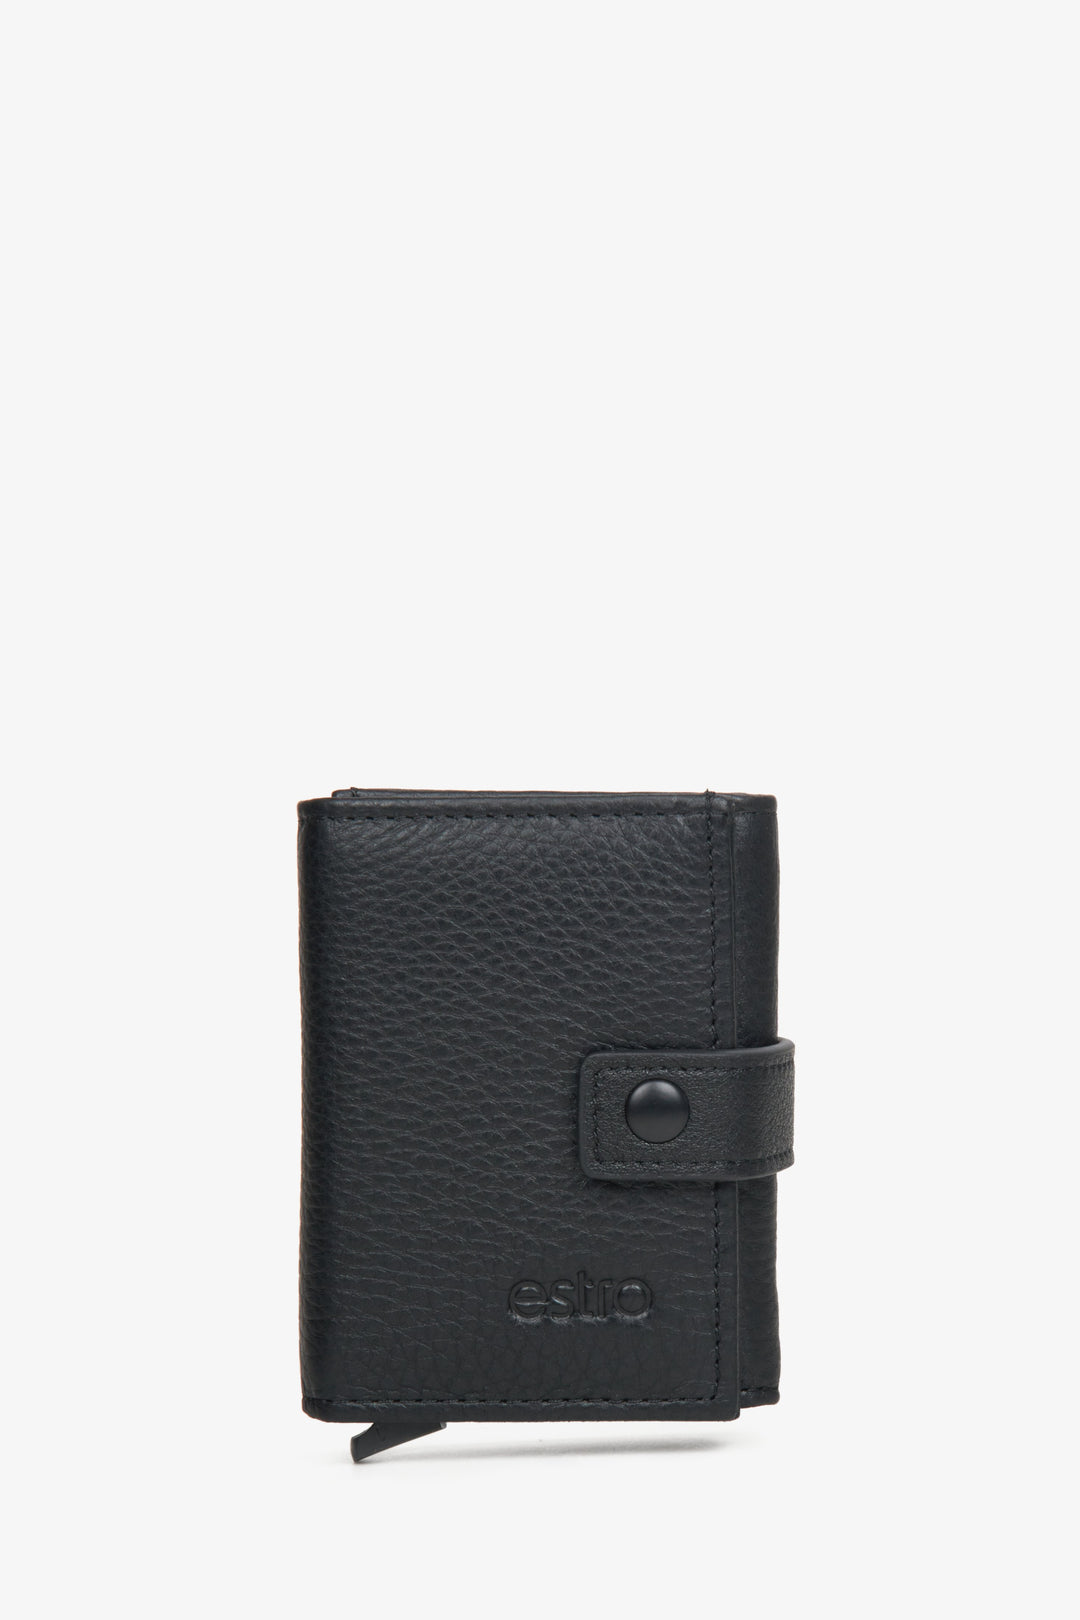 Men's black wallet by Estro with buckle.